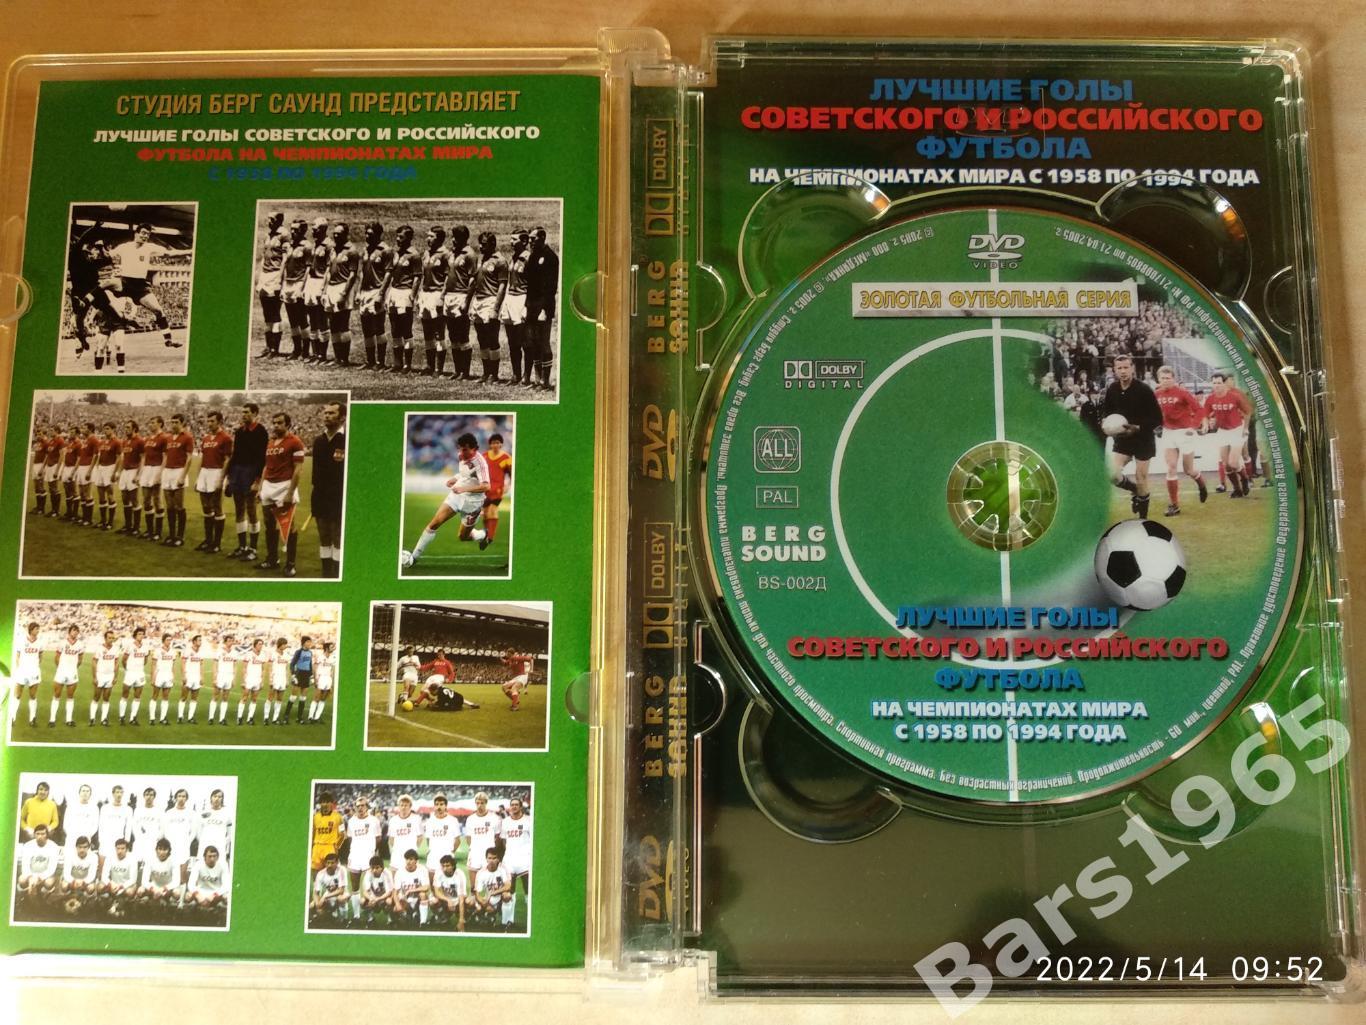 Лучшие голы советского и российского футбола на чемпионатах мира 1958-1994 DVD 1